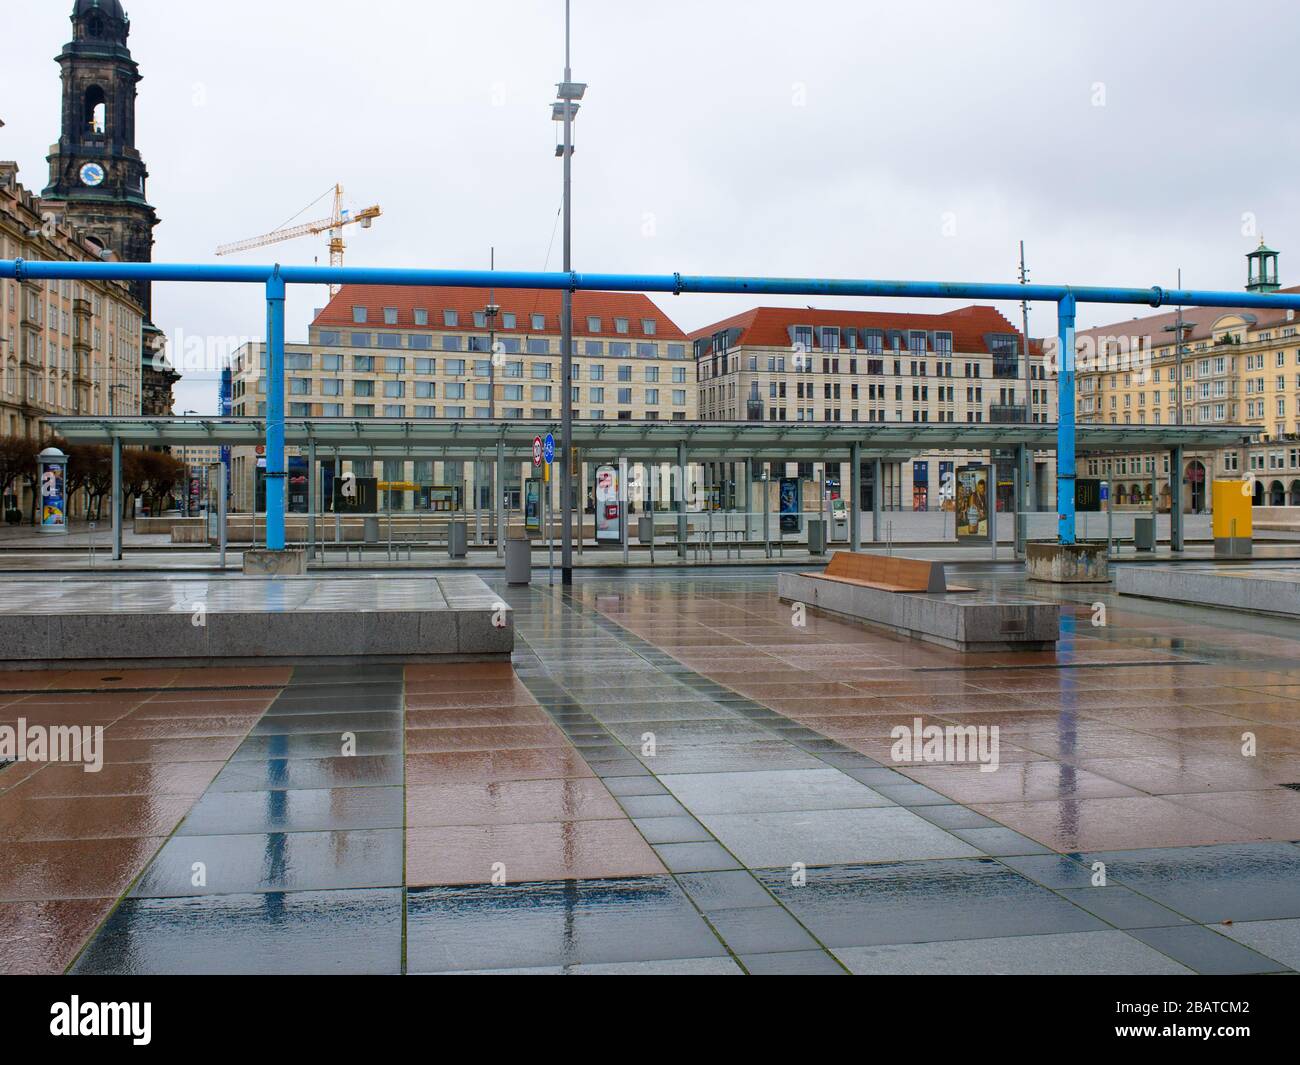 Platz vor dem Kulturpalast a Dresda während Coronavirus Lockdown Wilsdruffer Straße leere Bänke und leere Haltestelle im Regen Foto Stock